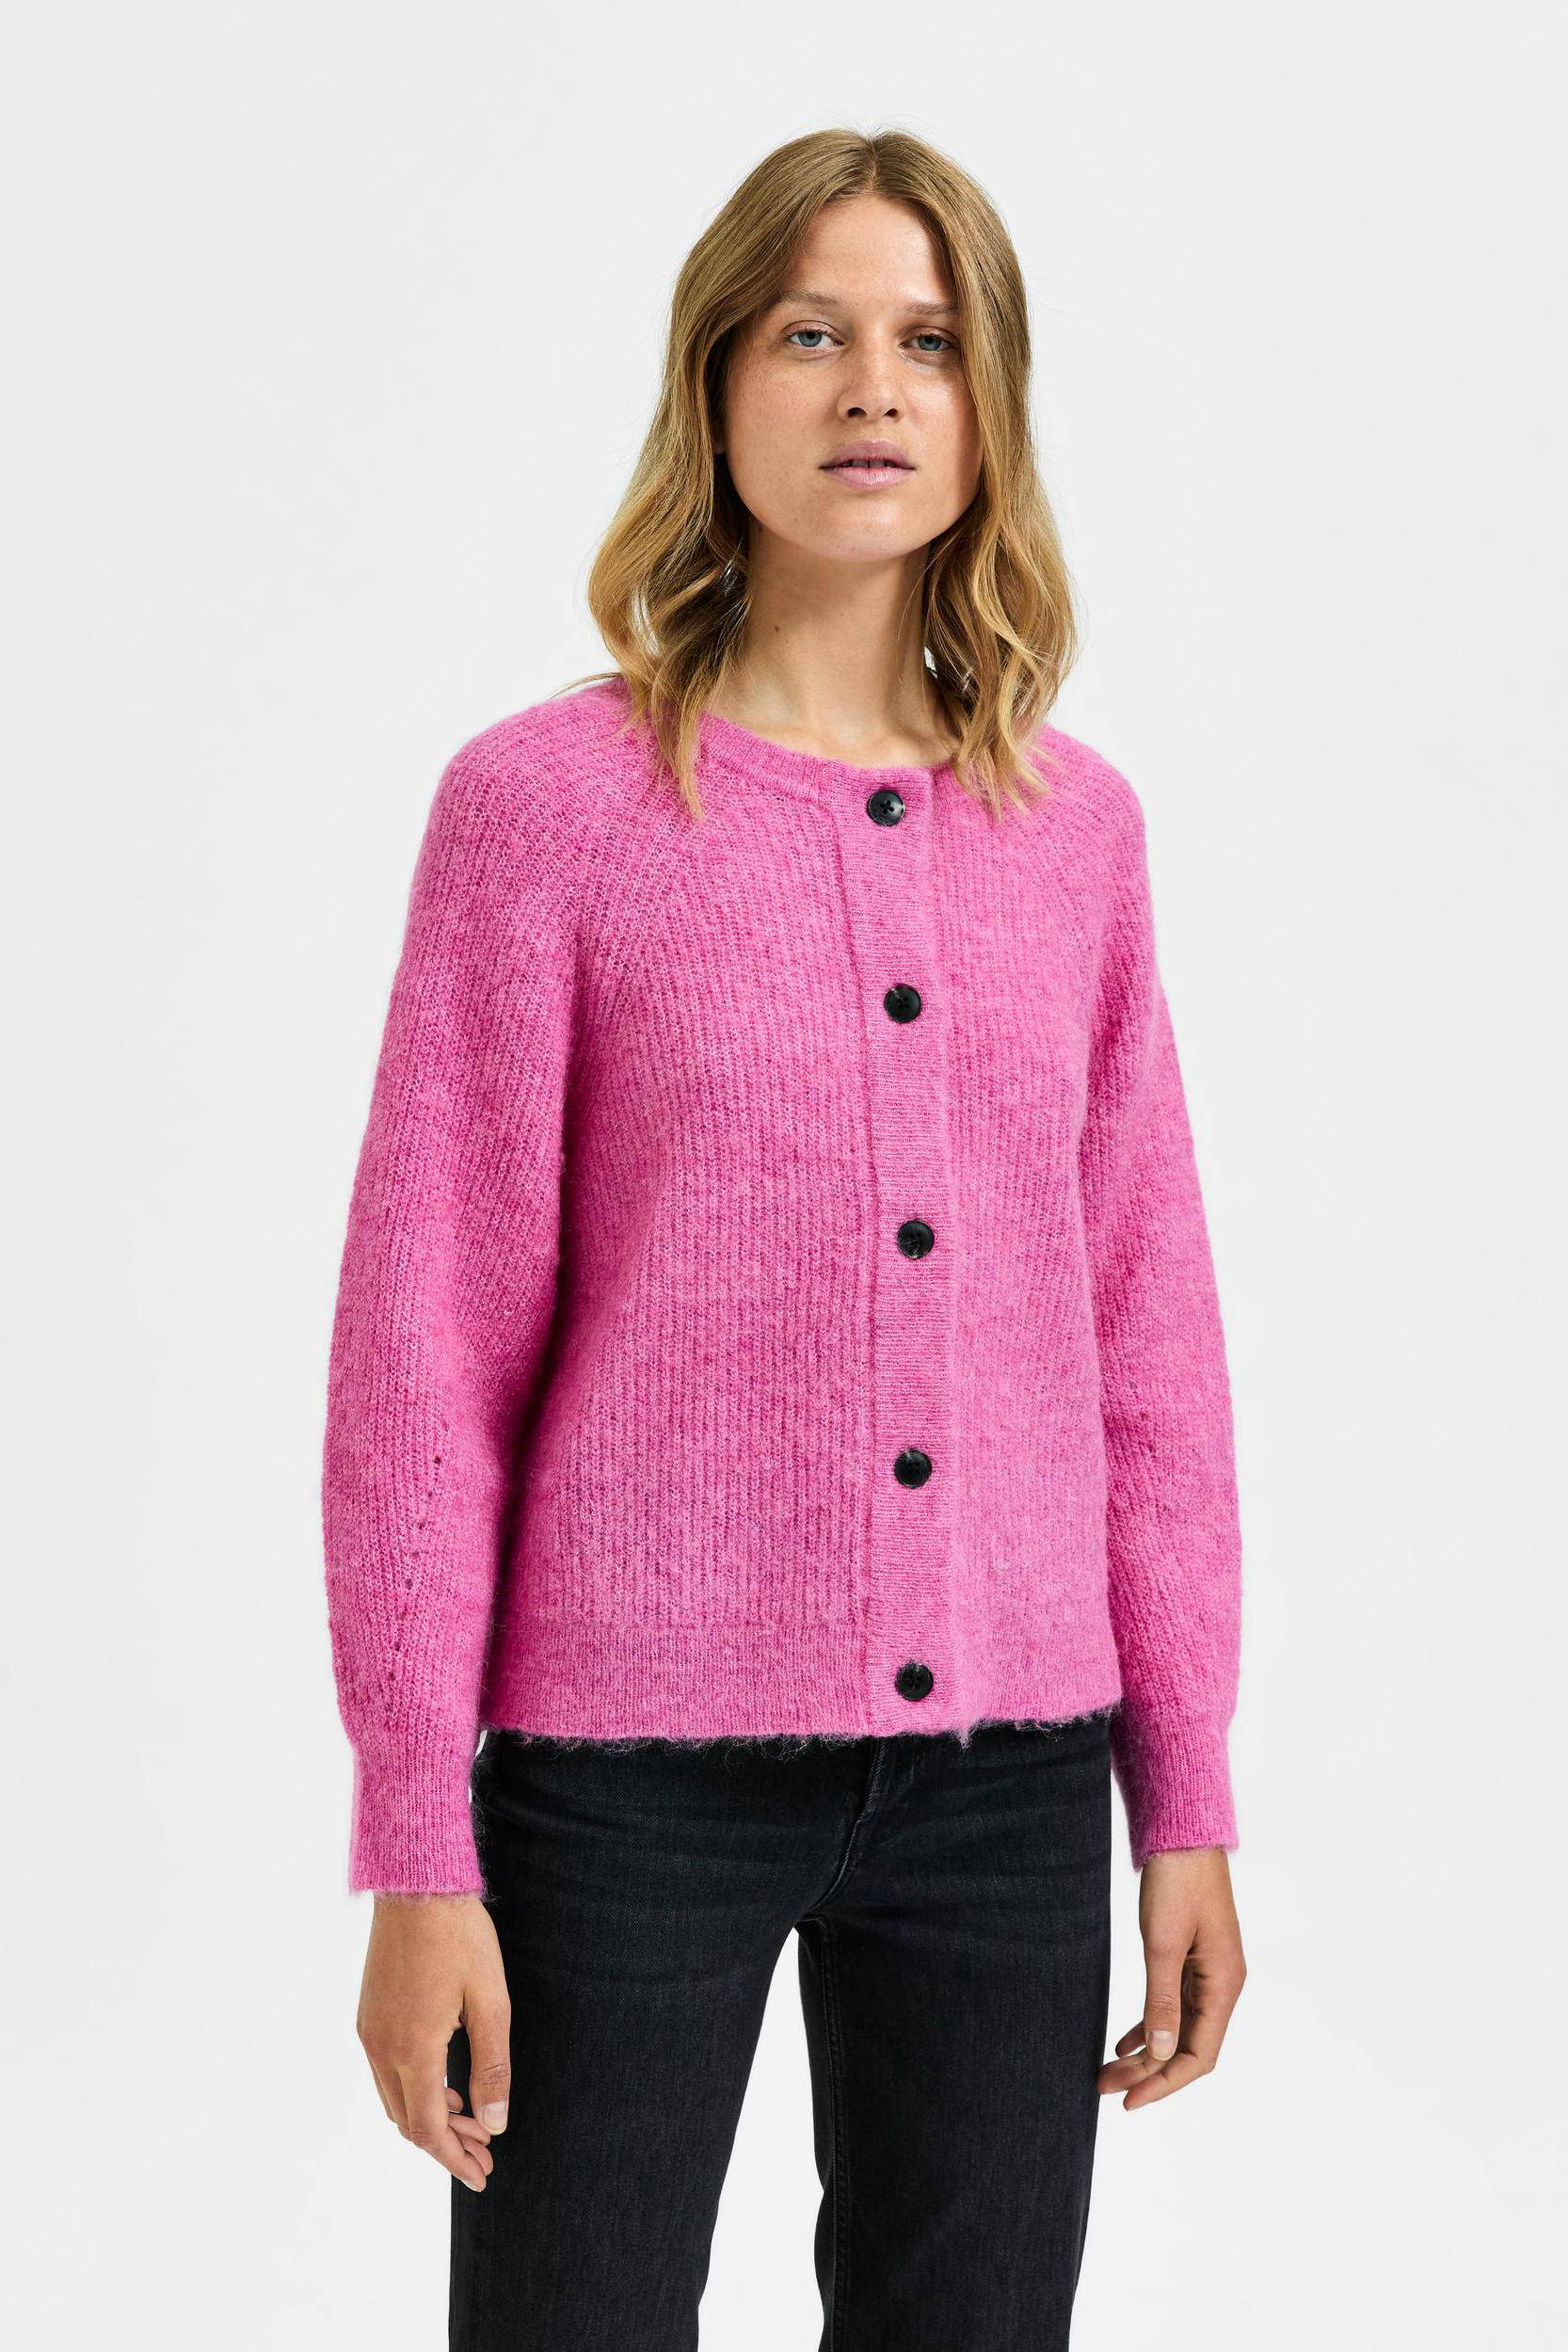 Kleding Dameskleding Sweaters Vesten Handgebreide Merino Wollen Vest Beige Slouchy Fit Buttoned Sweater 